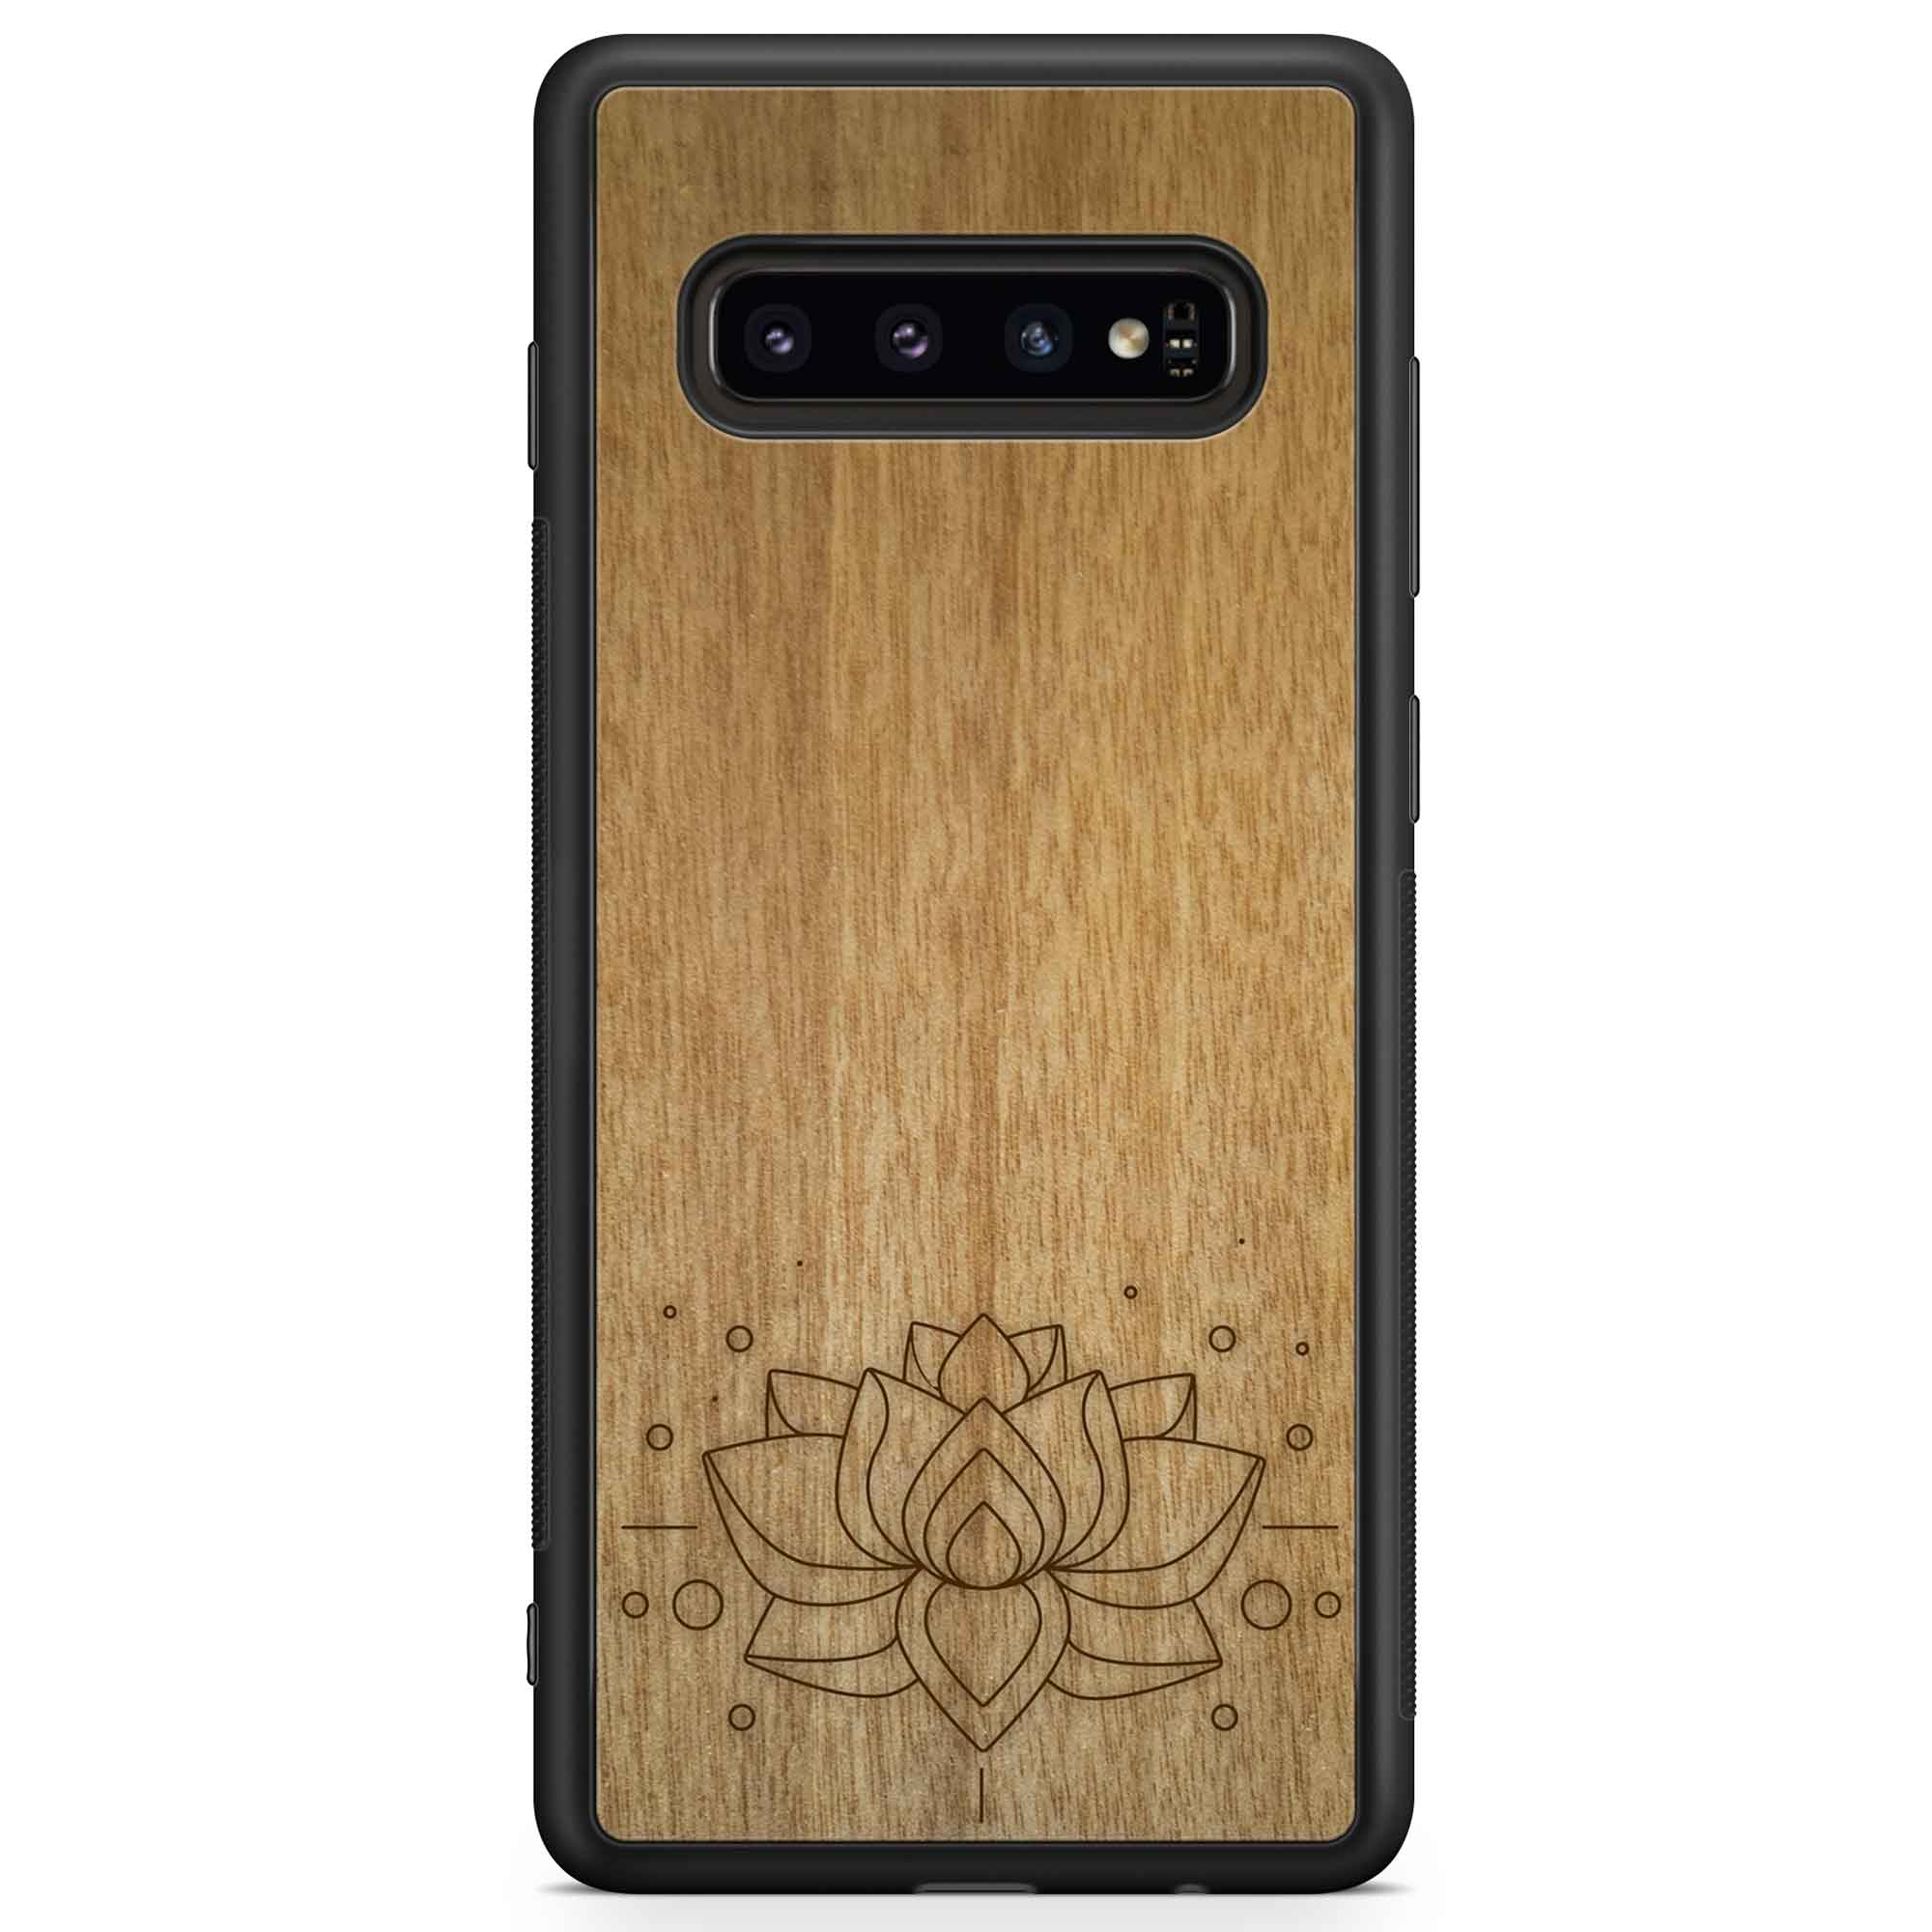 Carcasa de madera para teléfono con grabado Lotus Samsung S10